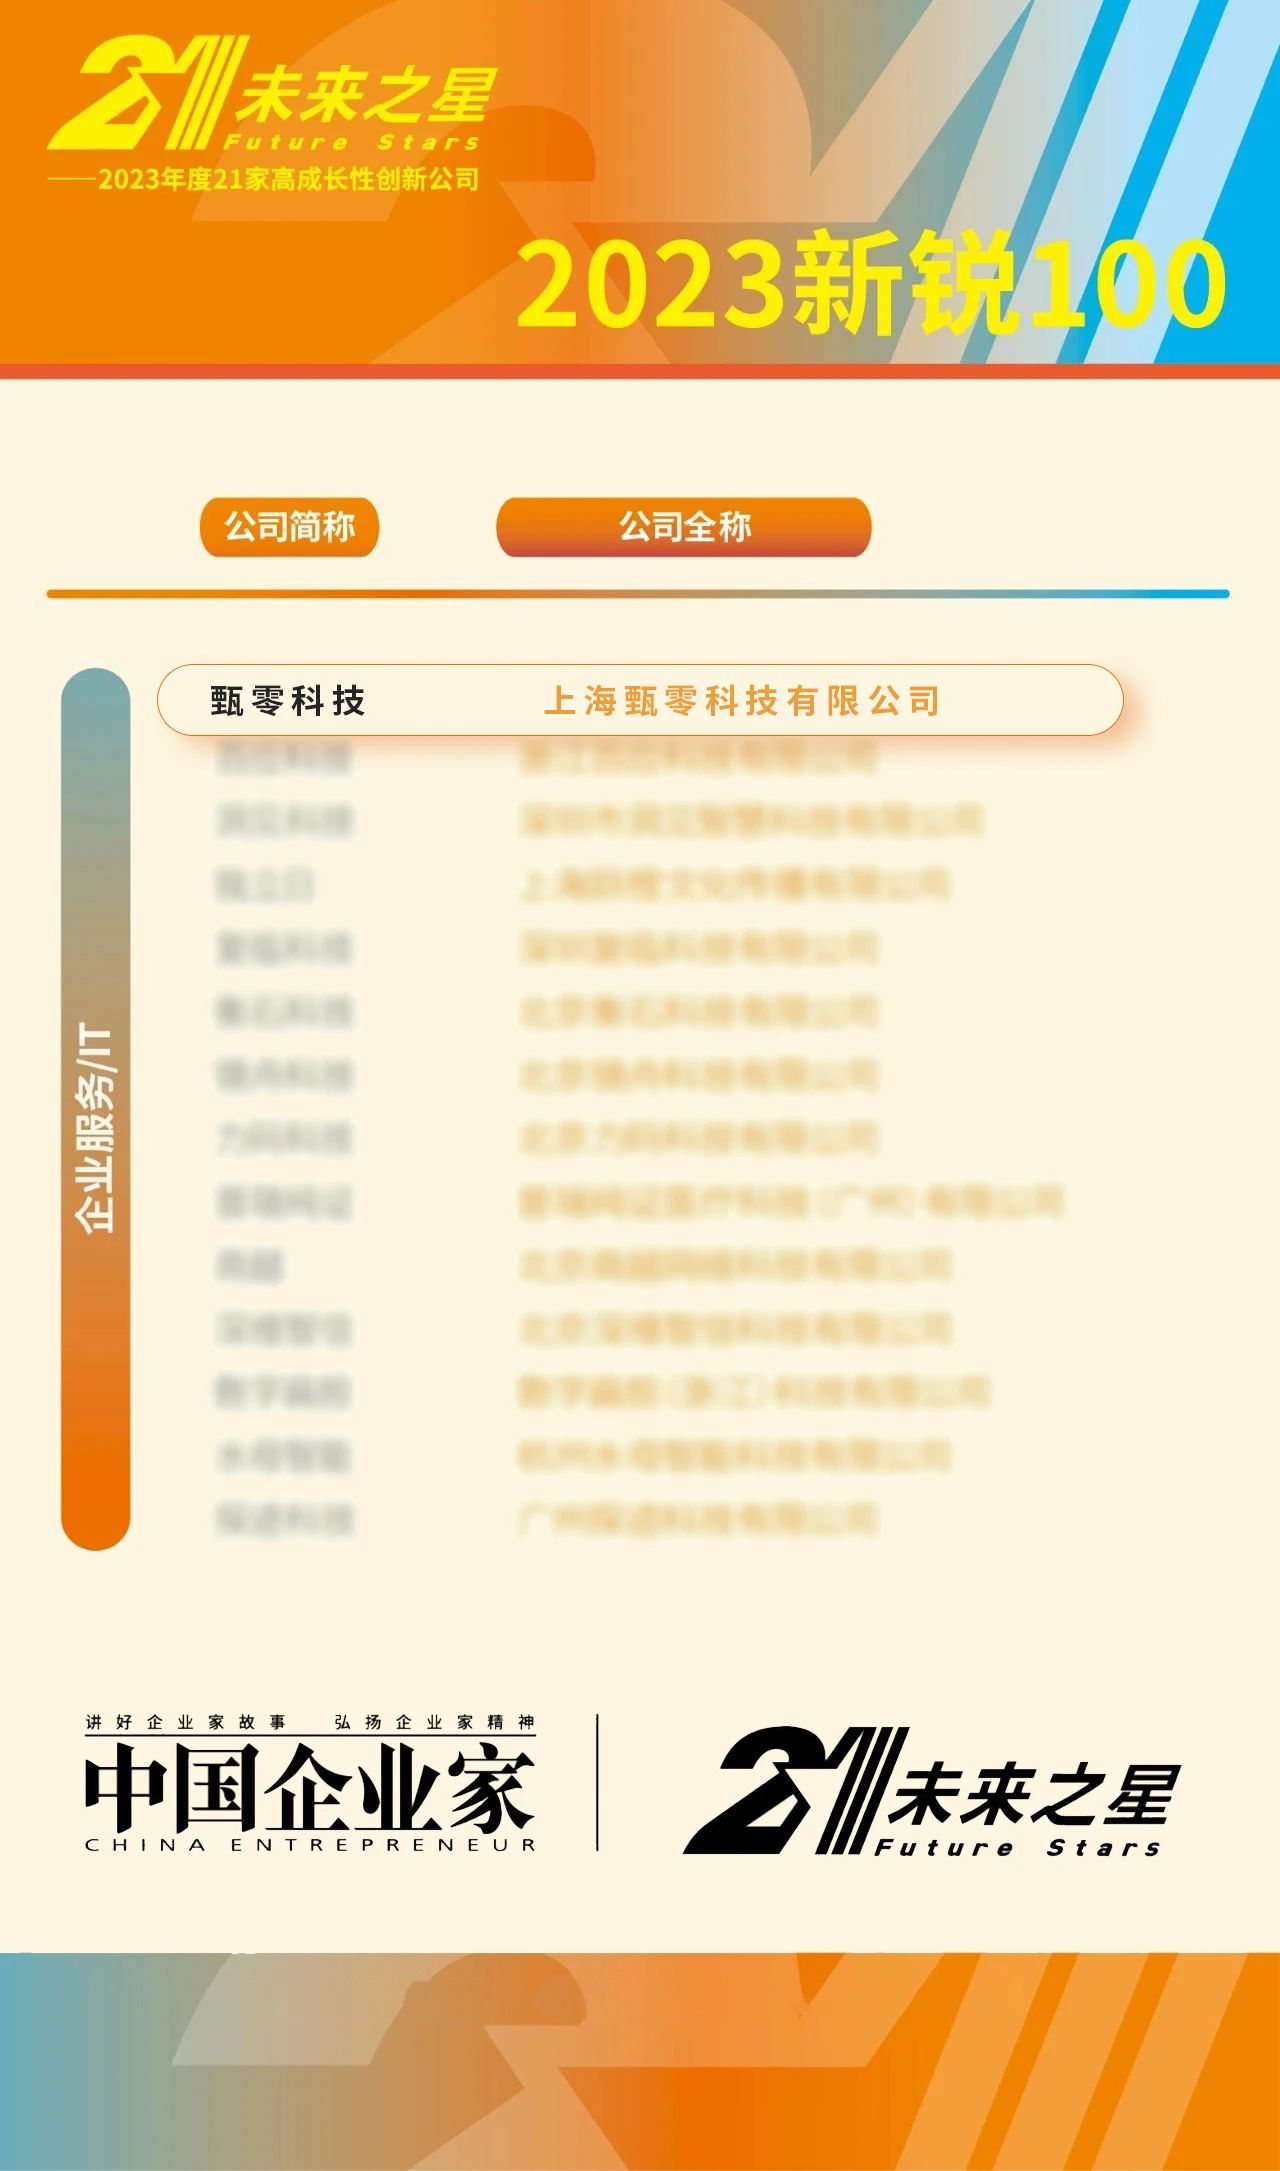 米博·体育中国有限公司入选榜单.jpg